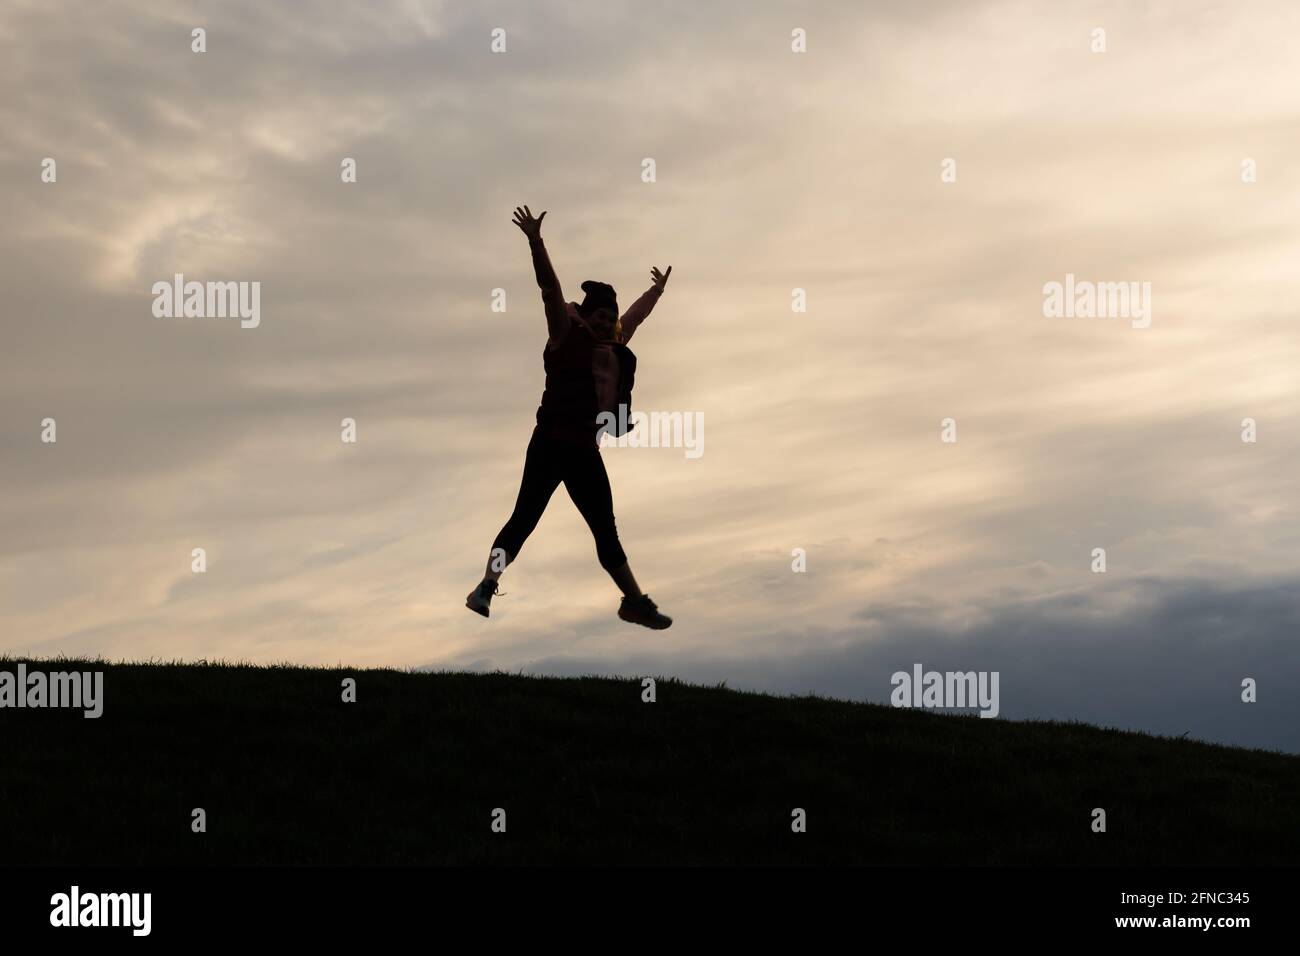 Silueta de una mujer deportiva que salta al aire en la cima de una colina al atardecer. Pose de estrella. Concepto de felicidad, energía de celebración. Foto de stock